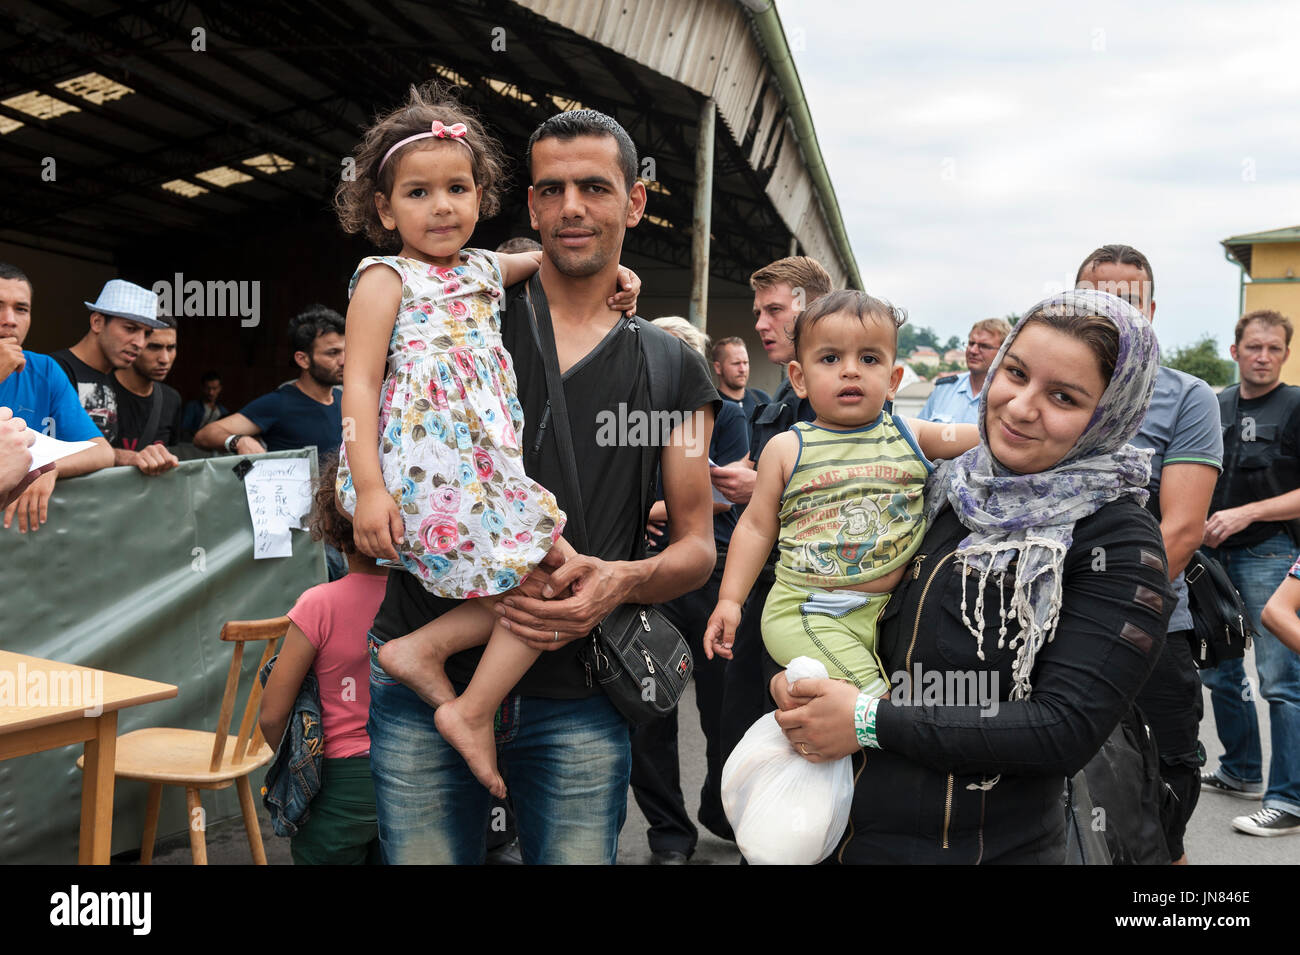 Passau, Germania - 1 agosto 2015: siriano famiglia dei profughi in un campo di registrazione in Passau, Germania. Essi sono in cerca di asilo in Europa. Foto Stock